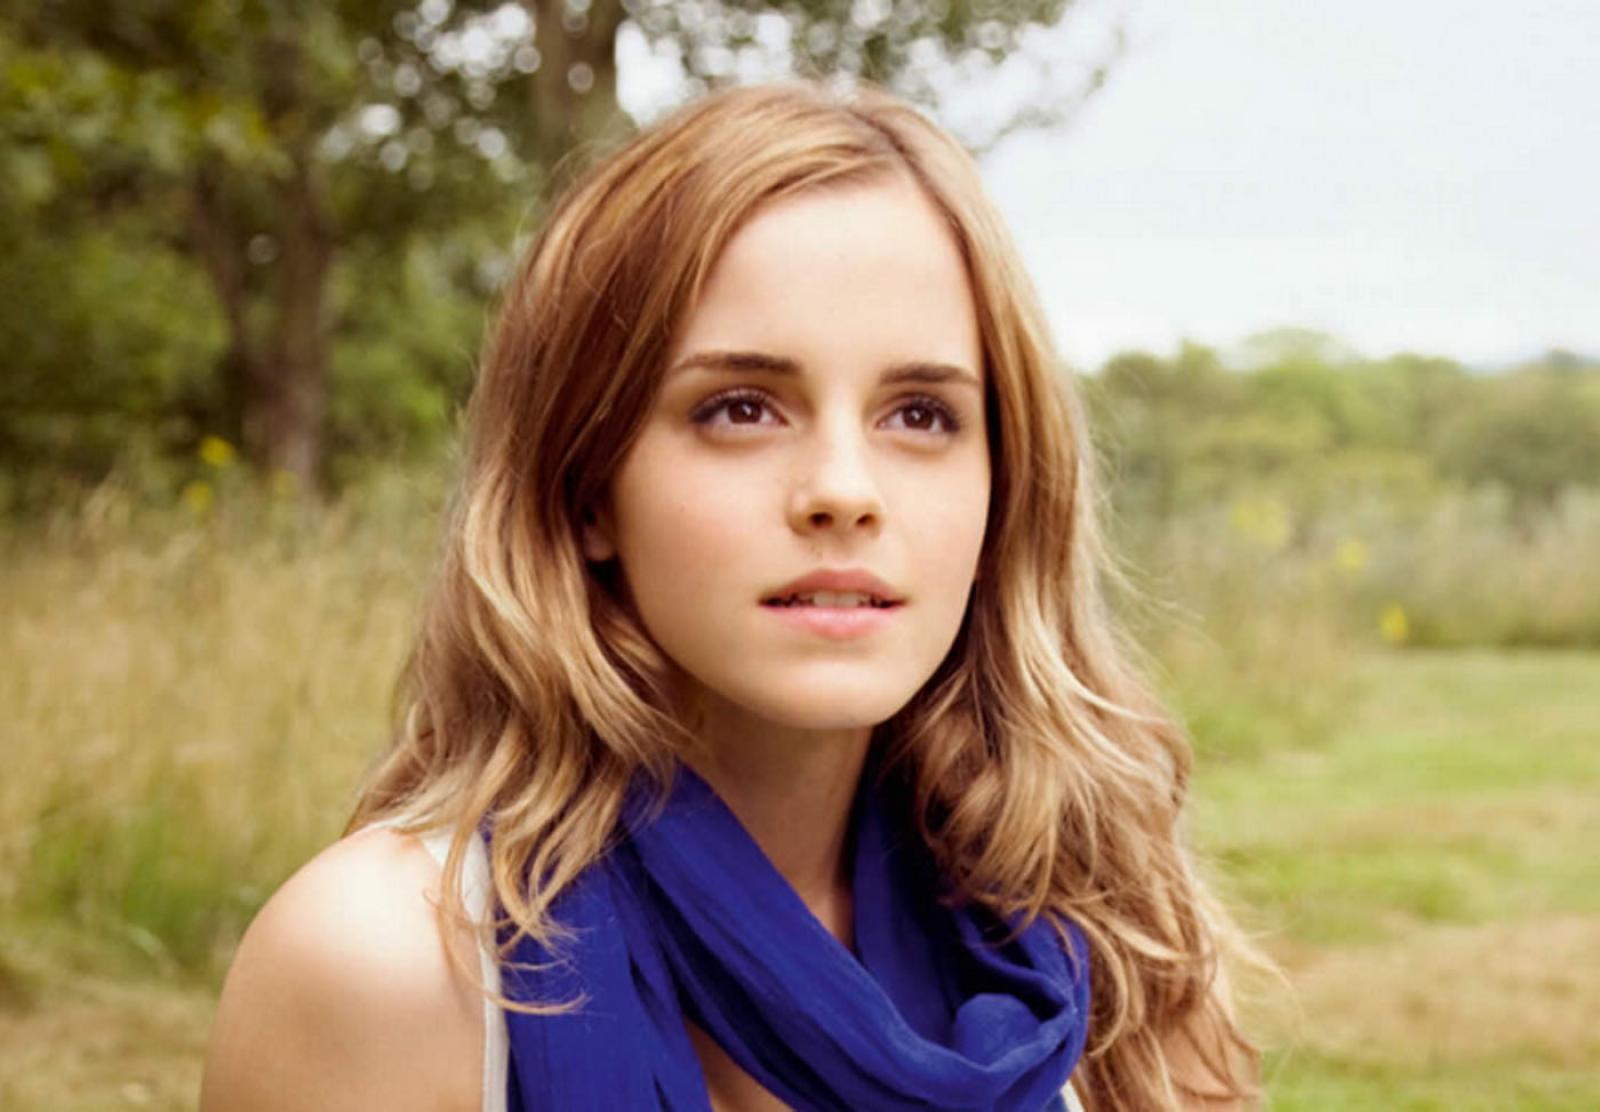 Beauty Emma Watson Wallpaper. High Definition Wallpaper, High